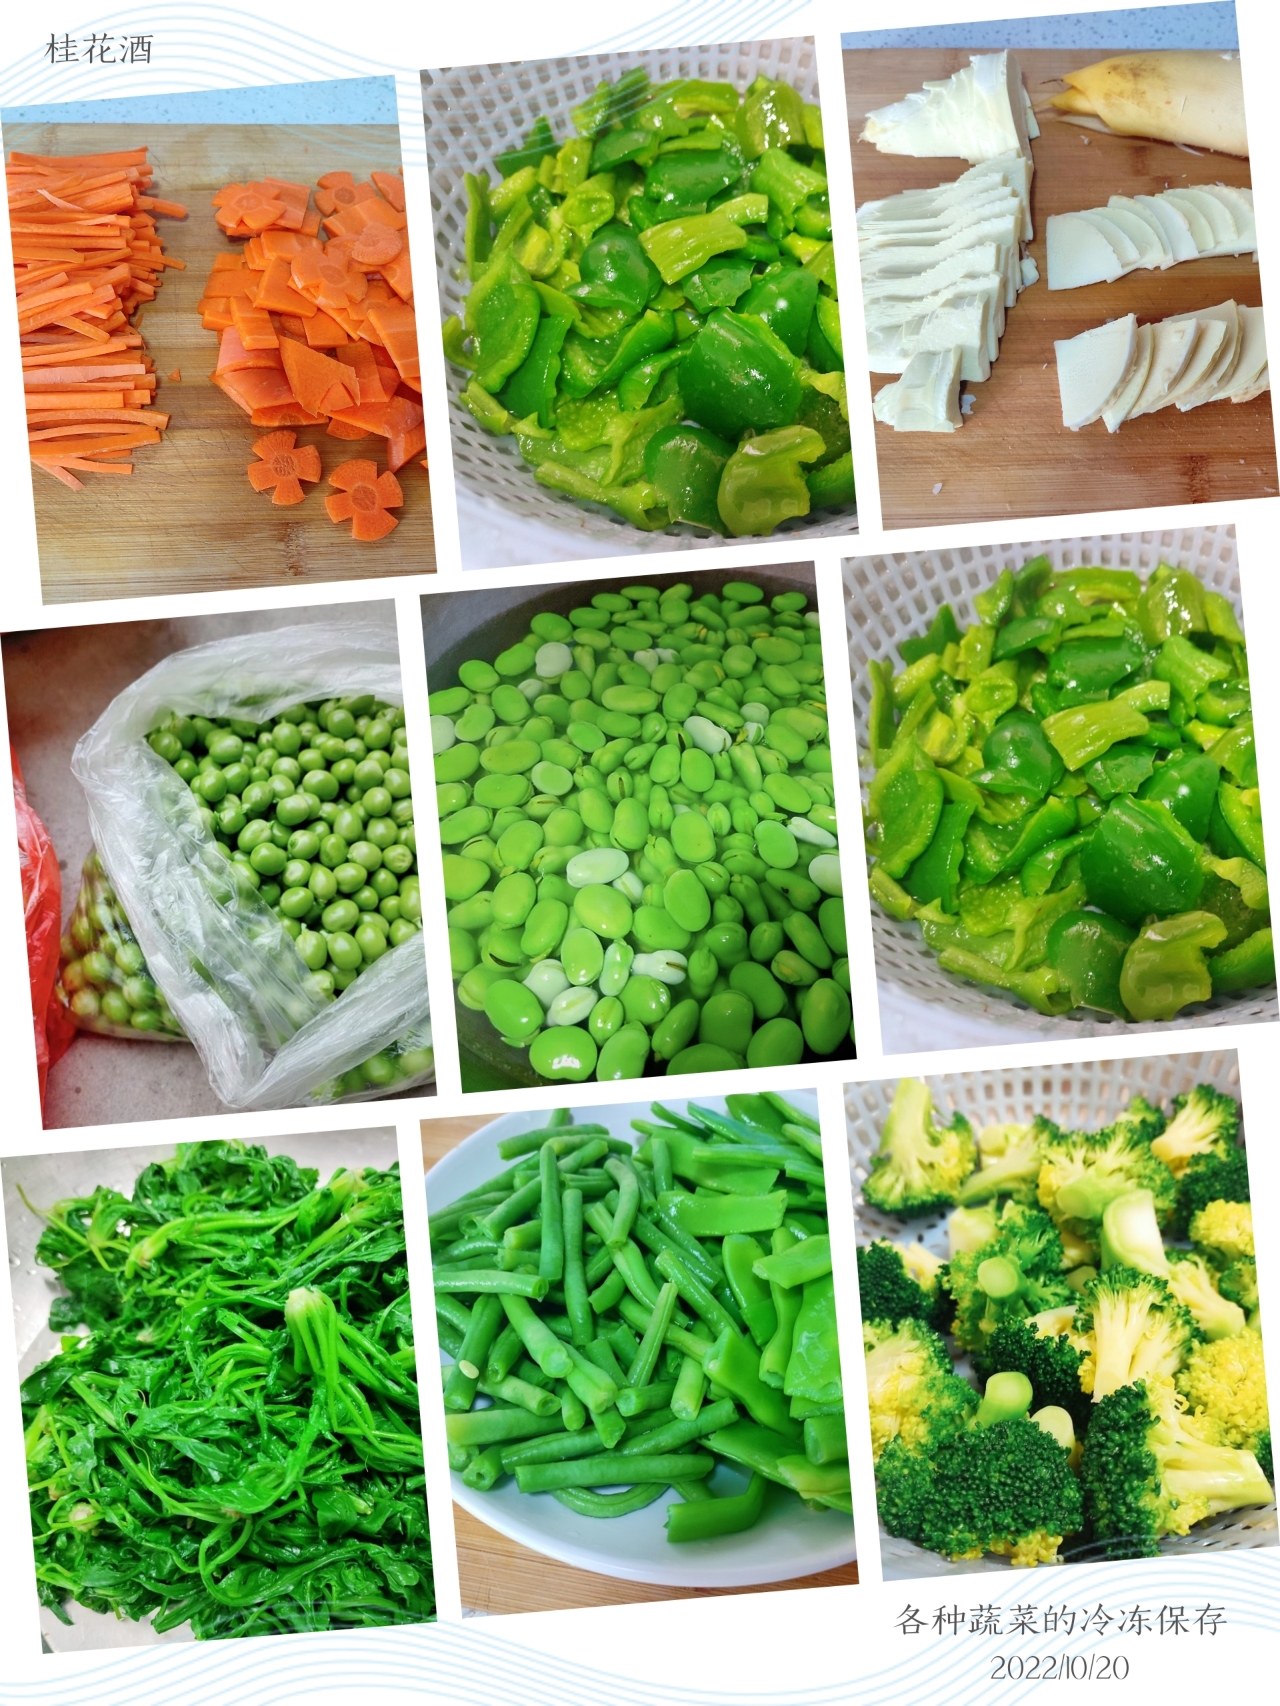 各种蔬菜的冷冻保存的做法